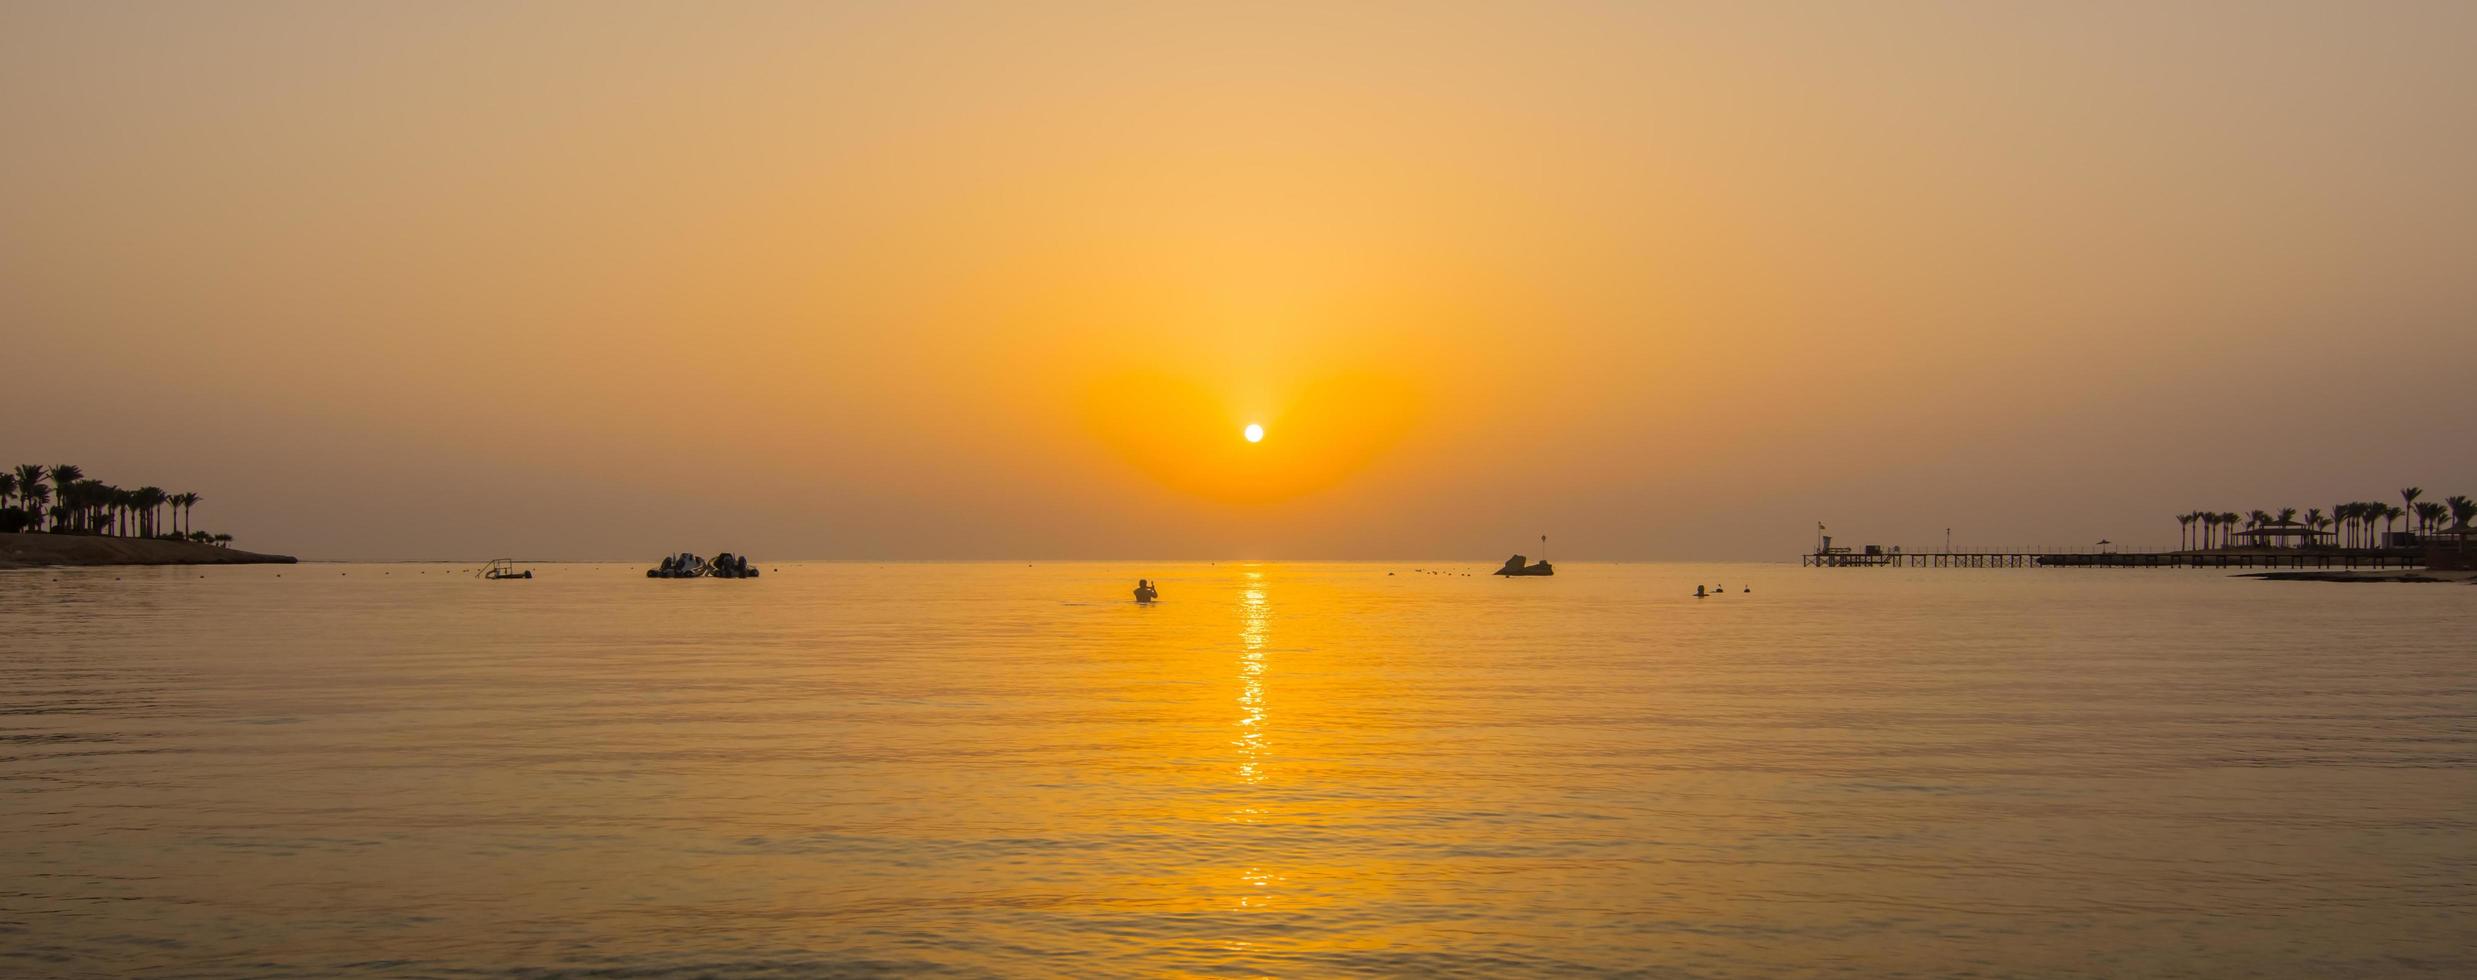 morbido onde a il mare durante caldo Alba su vacanza nel Egitto panorama foto